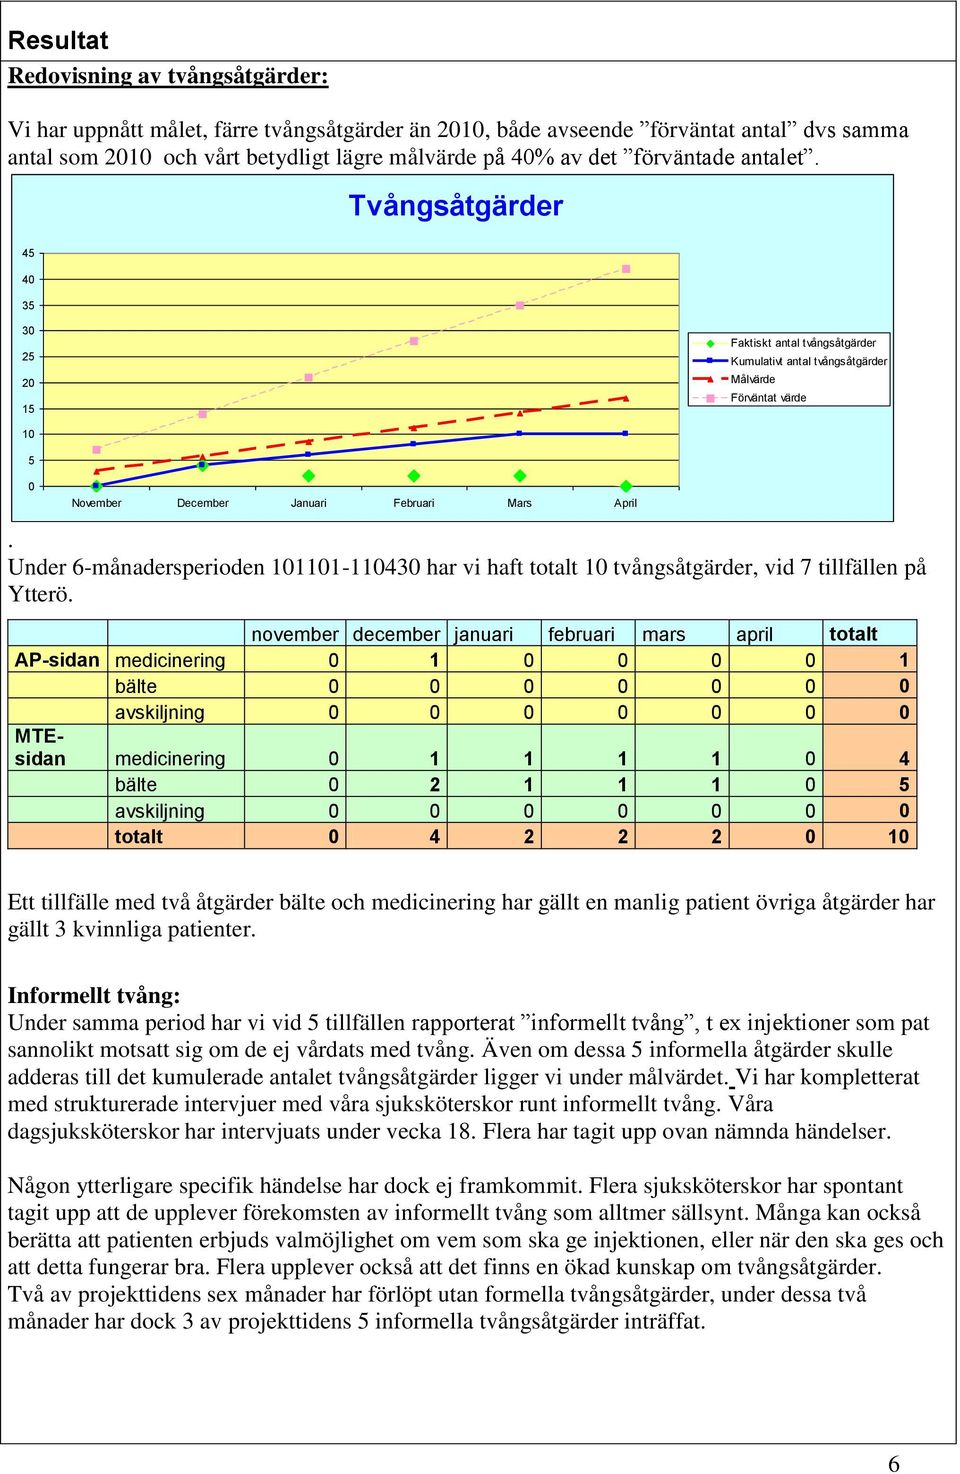 Under 6-månadersperioden 101101-110430 har vi haft totalt 10 tvångsåtgärder, vid 7 tillfällen på Ytterö.